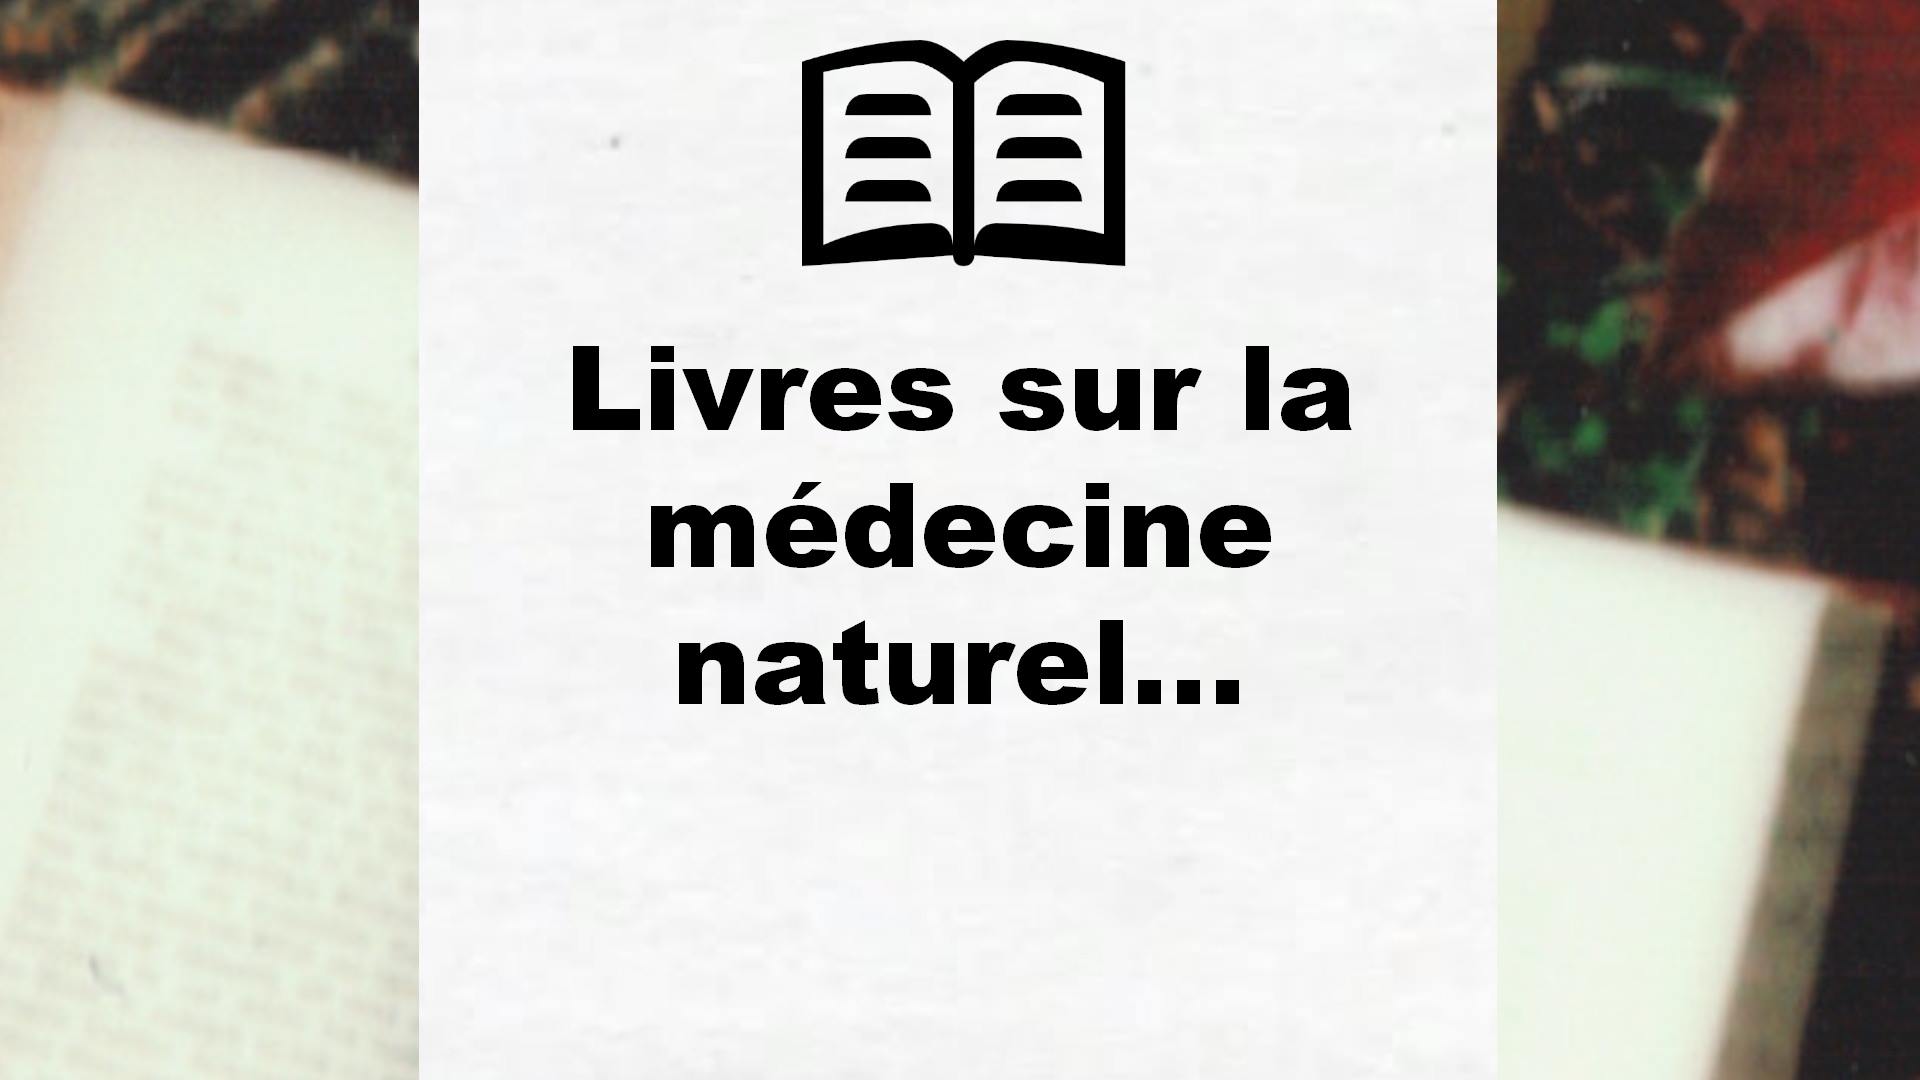 Livres sur la médecine naturelle